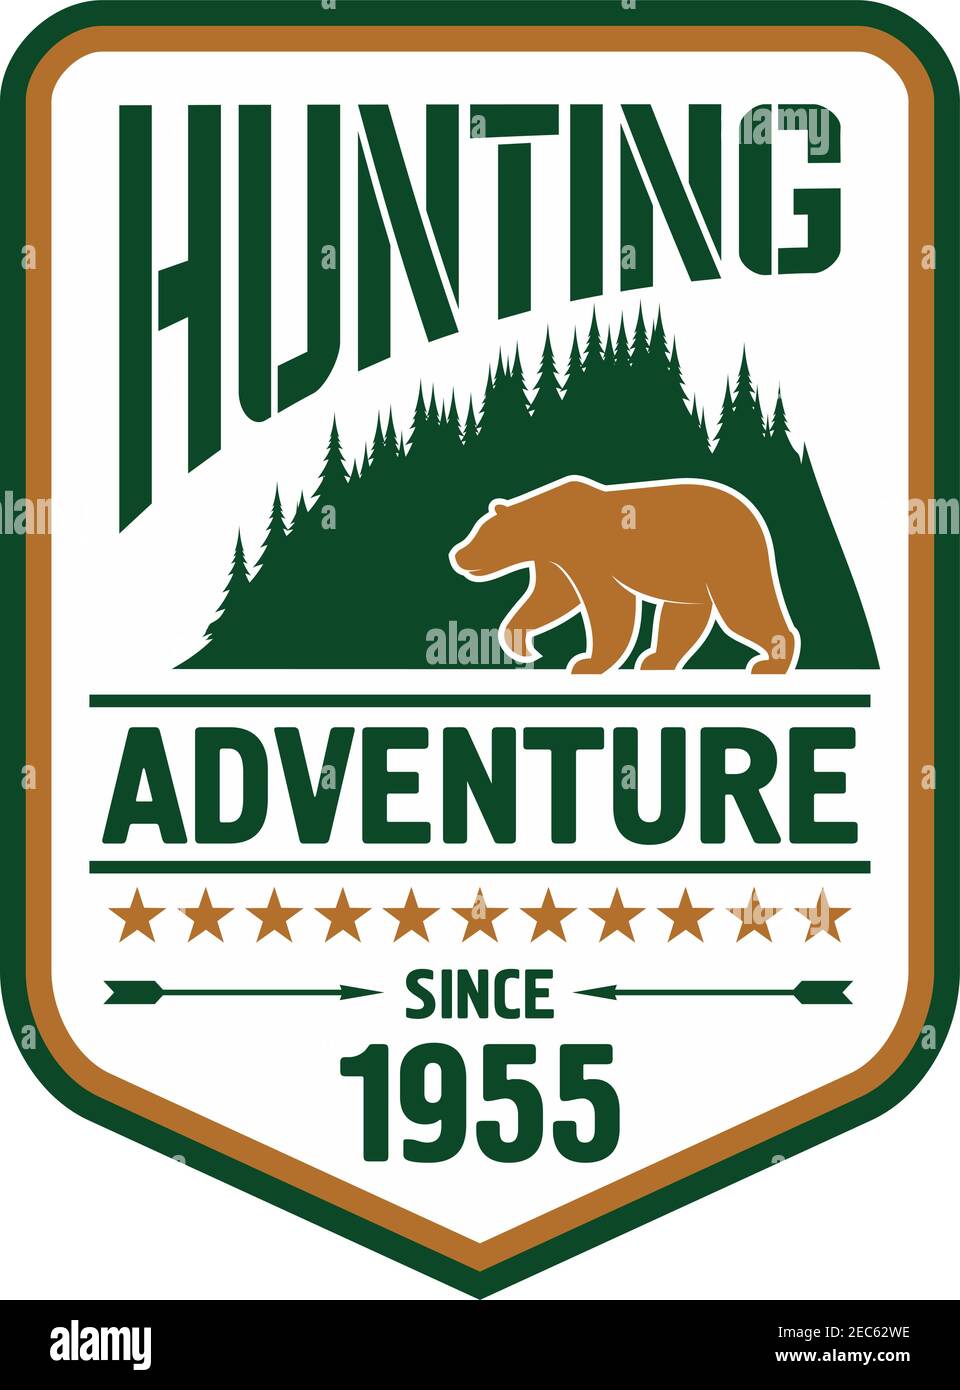 Jagd- und Outdoor-Adventure-Badge-Design mit Bär auf der Vorderseite von holzigen Bergen ergänzt durch Sterne, Pfeile und Gründungsdatum Stock Vektor